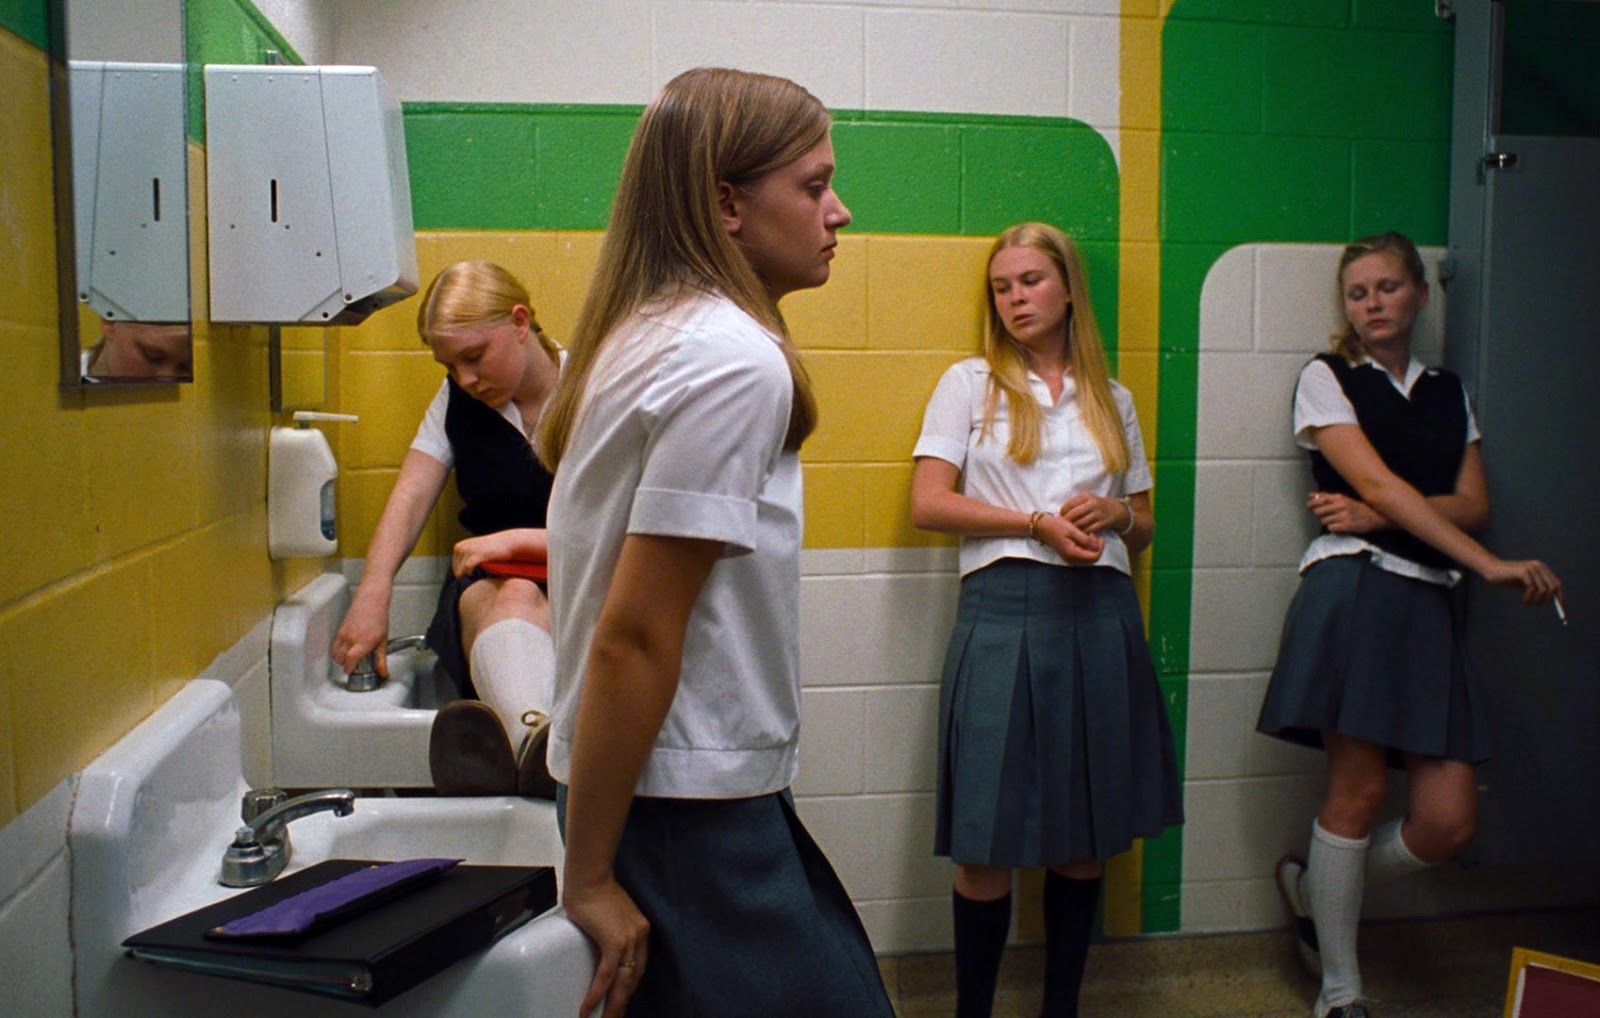 18 в школе в туалете. The Virgin Suicides 1999. The Virgin Suicides (2000) кадры. Девственницы самоубийцы Сесилия. Школьный туалет девочек.